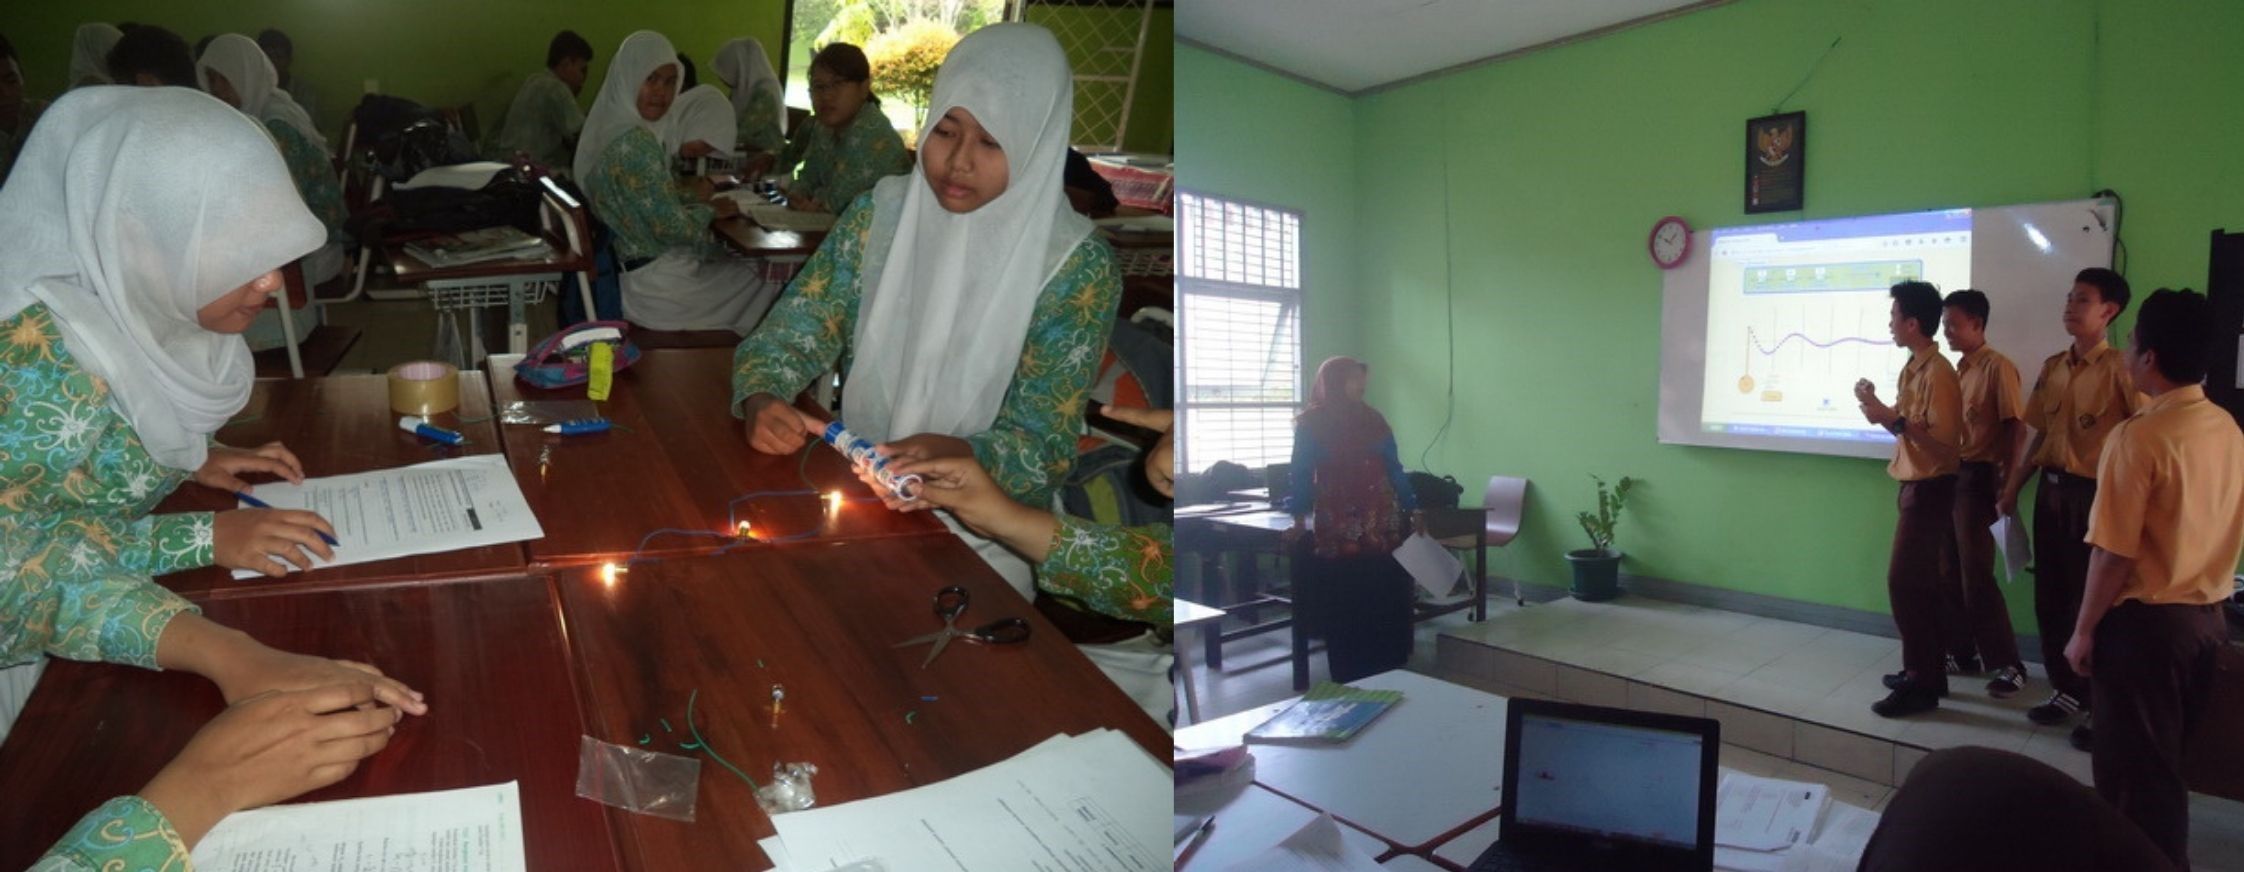 Kegiatan pembelajaran Fisika bersama Dian Mufarridah, M.Pd. di SMA Negeri 2 Kota Bontang, Kalimantan Timur